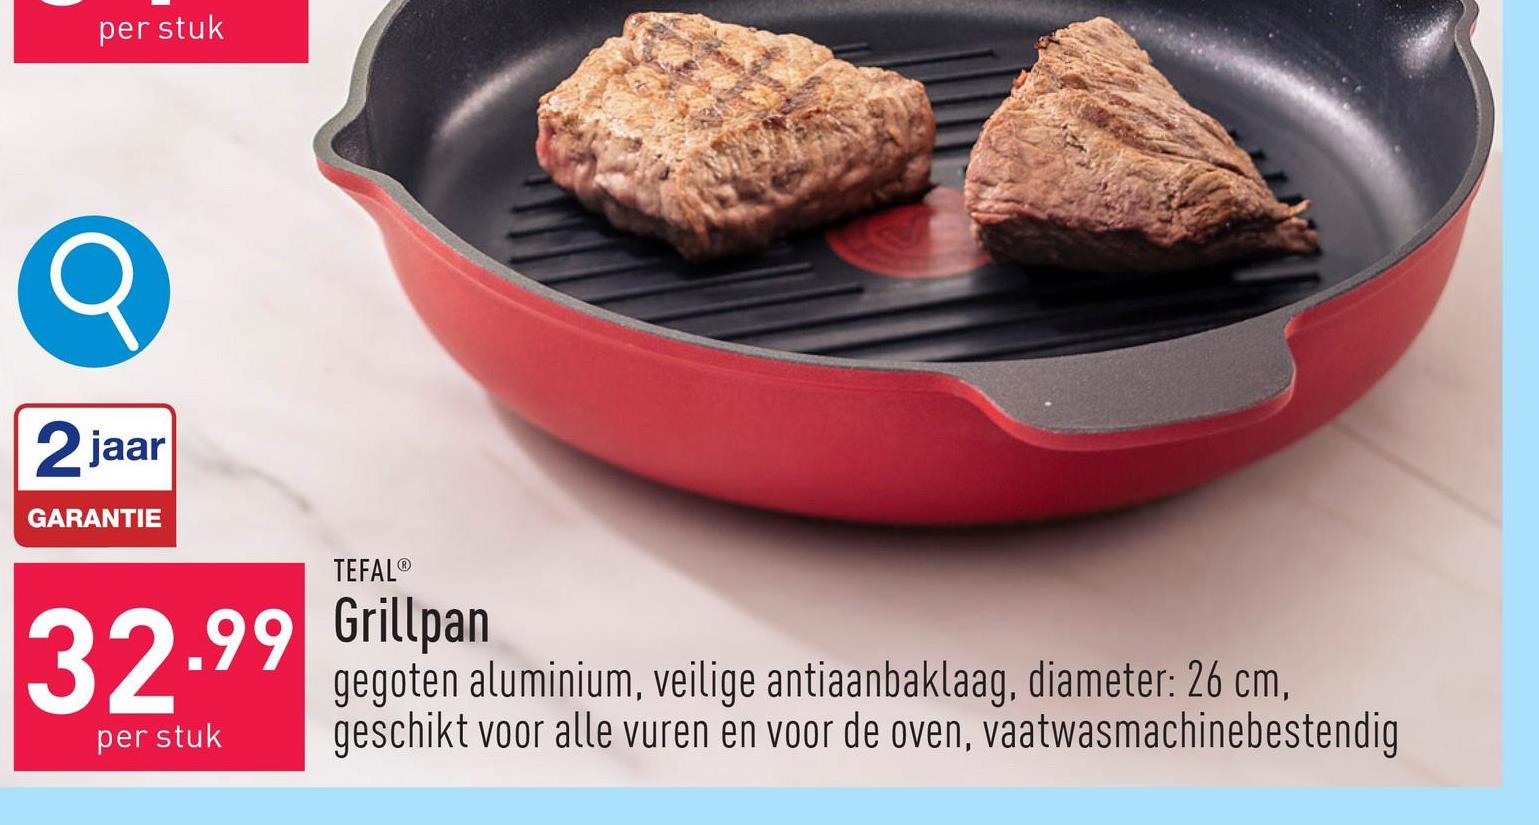 Grillpan "Daily Chef" gegoten aluminium, veilige antiaanbaklaag, diameter: 26 cm, thermospot in het midden van de pan, geschikt voor alle vuren (ook inductie) en voor de oven (tot 175 °C), vaatwasmachinebestendig